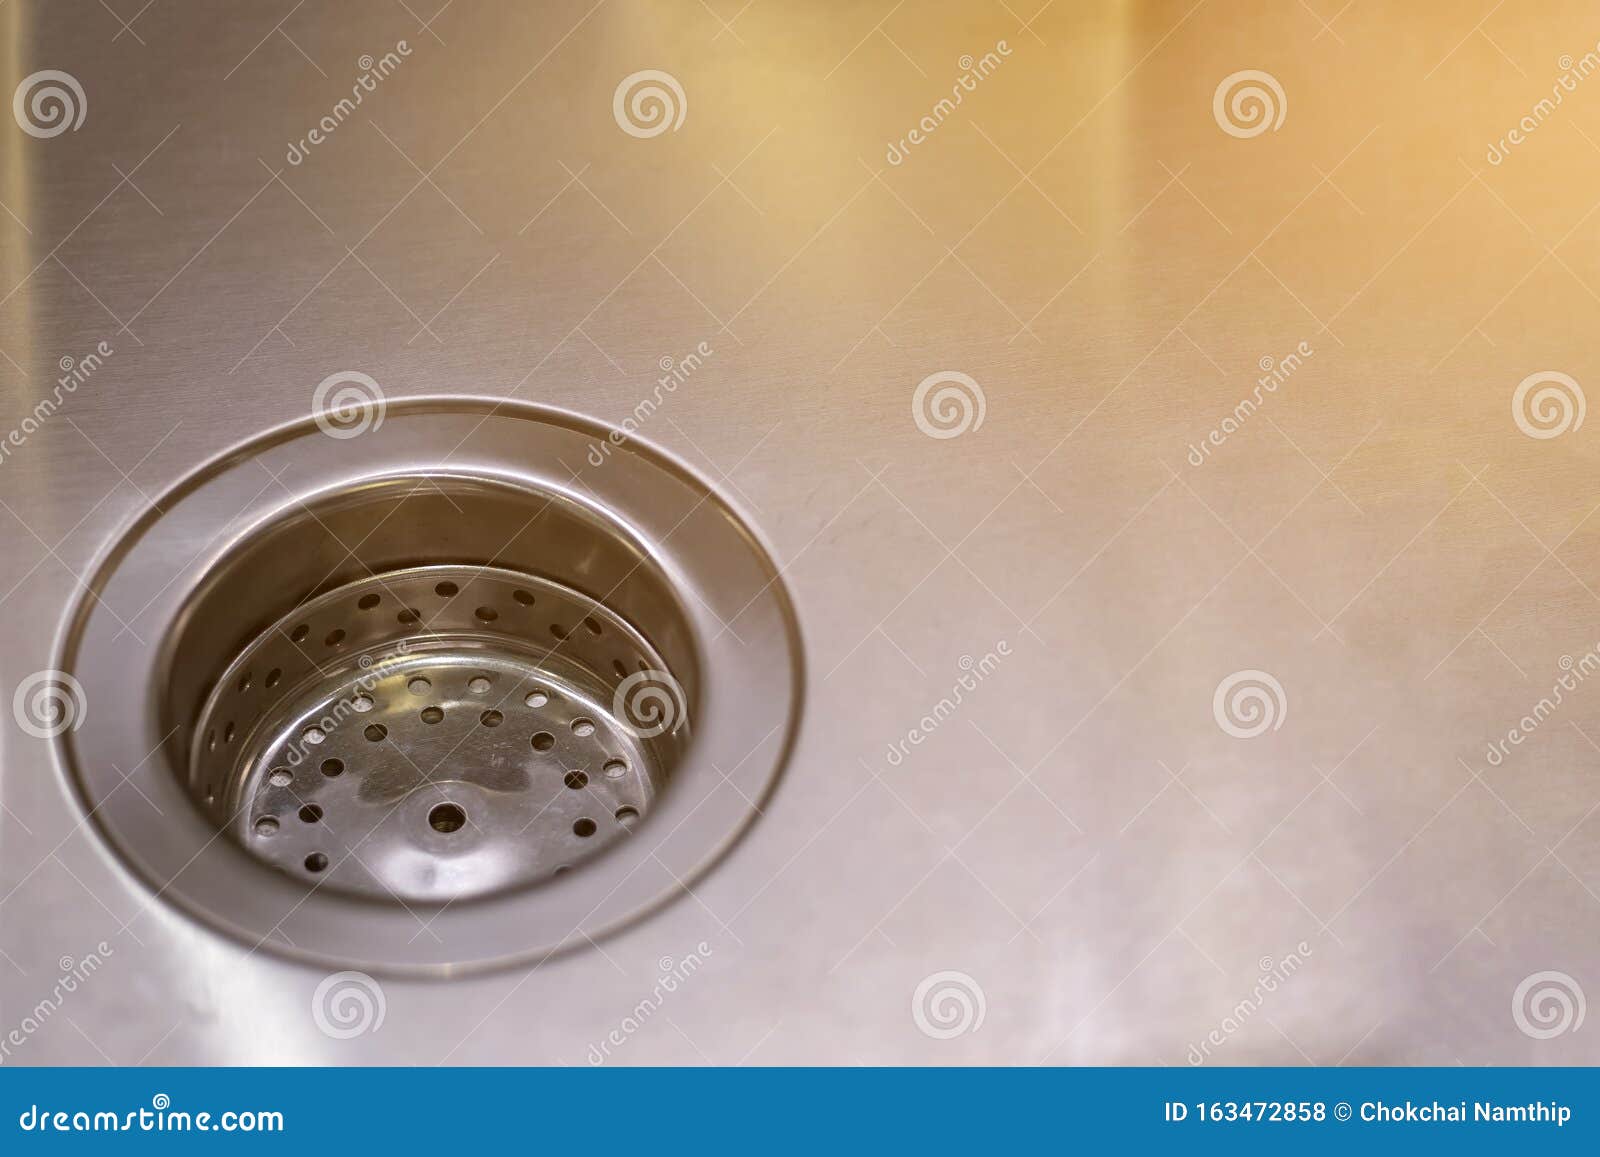 holes in bathroom sink drain